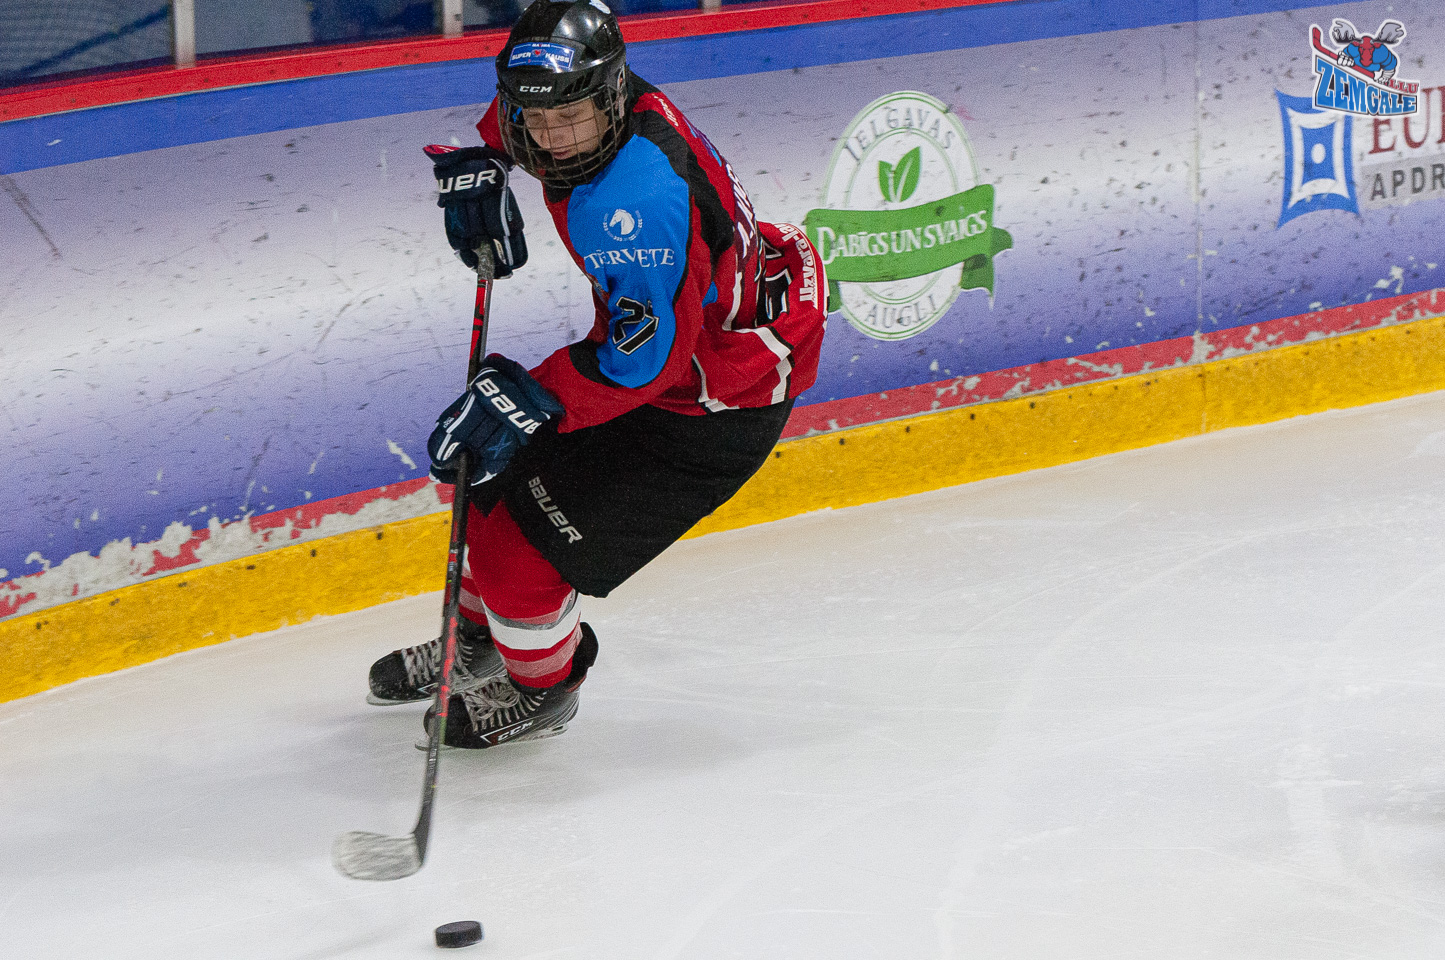 Latvijas bērnu un jauniešu hokeja čempionāta (LBJČH) regulārā čempionāta spēle starp “JLSS U15 B” un “Brocēnu NBJSS” Jelgavas ledus hallē 2019. gada 22. decembrī | Foto: Ruslans Antropovs / rusantro.com